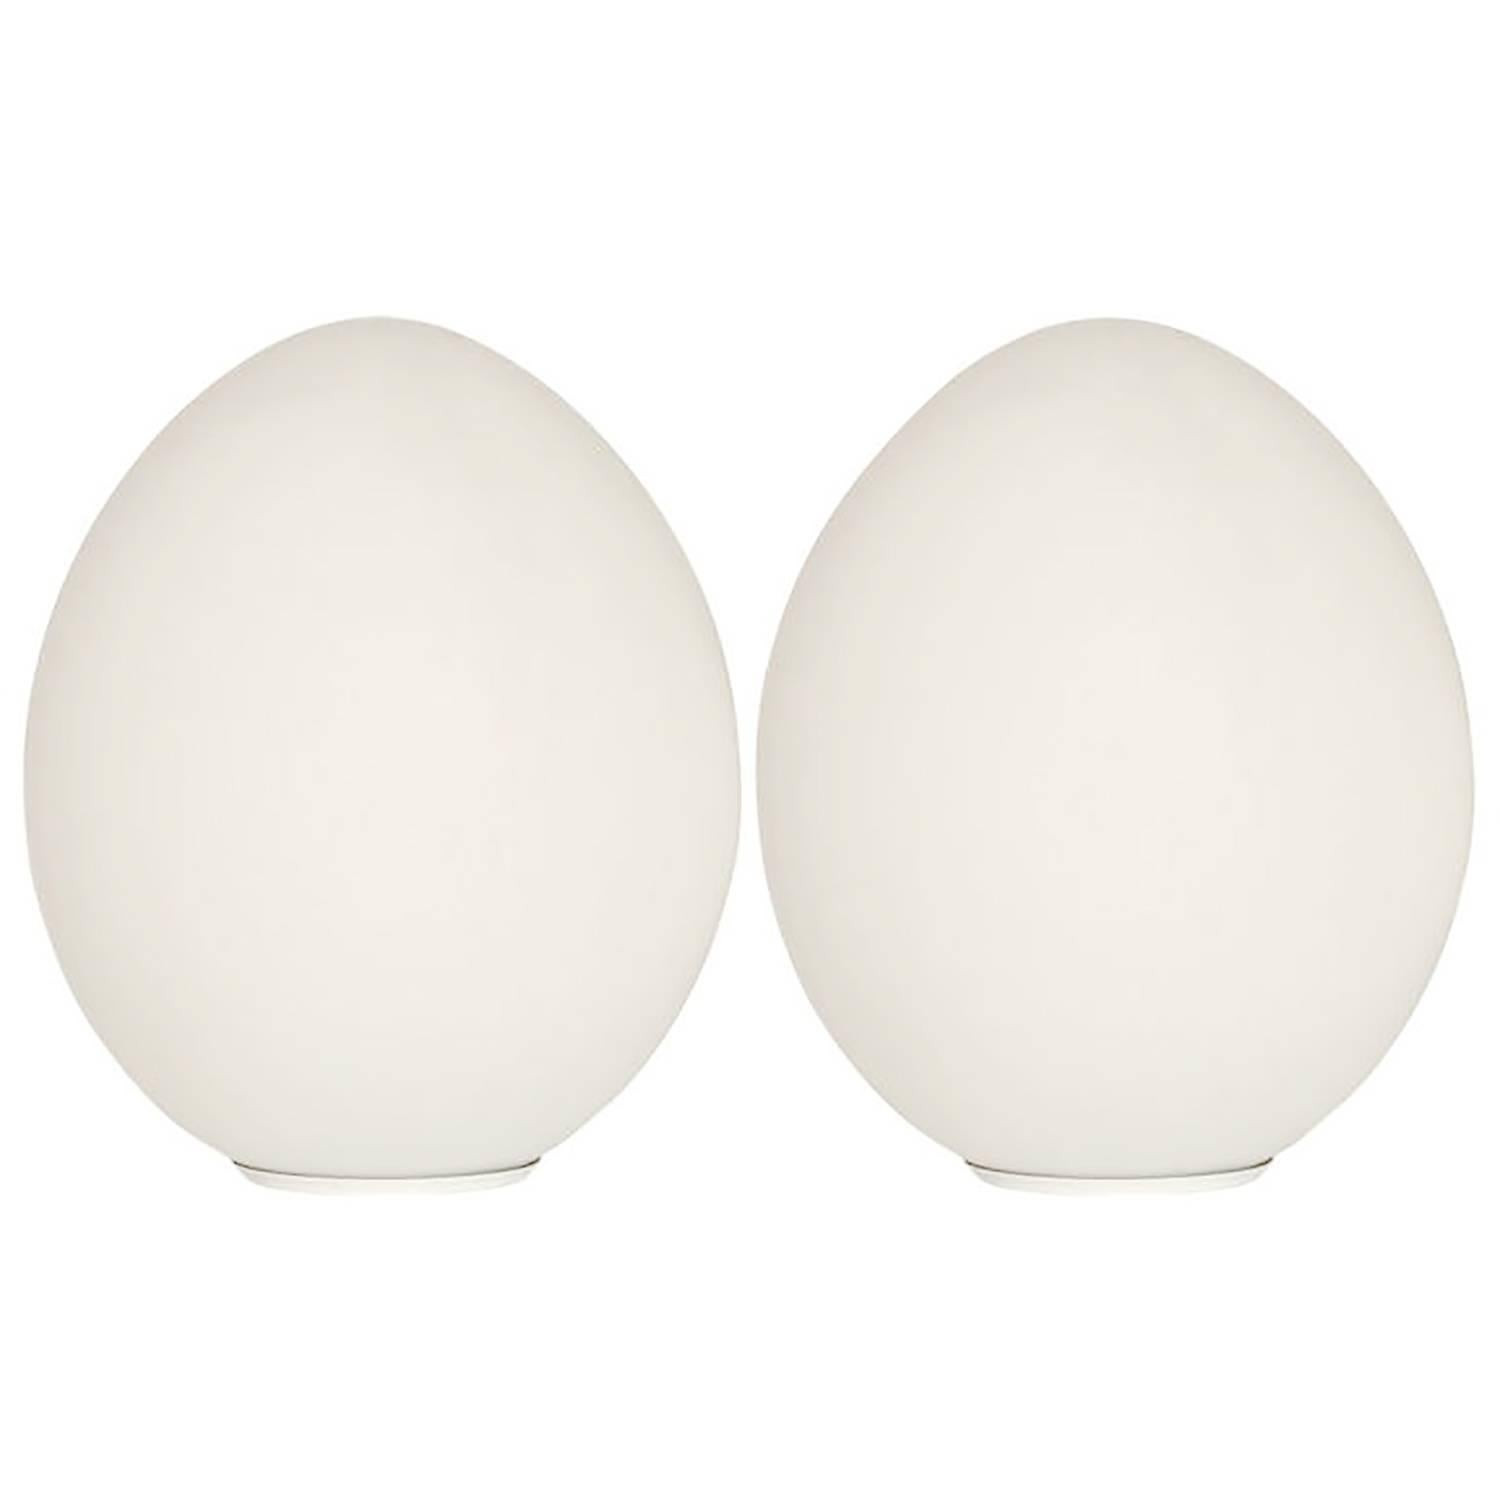 Pair of Laurel Lamp Company Glass Egg Lamps